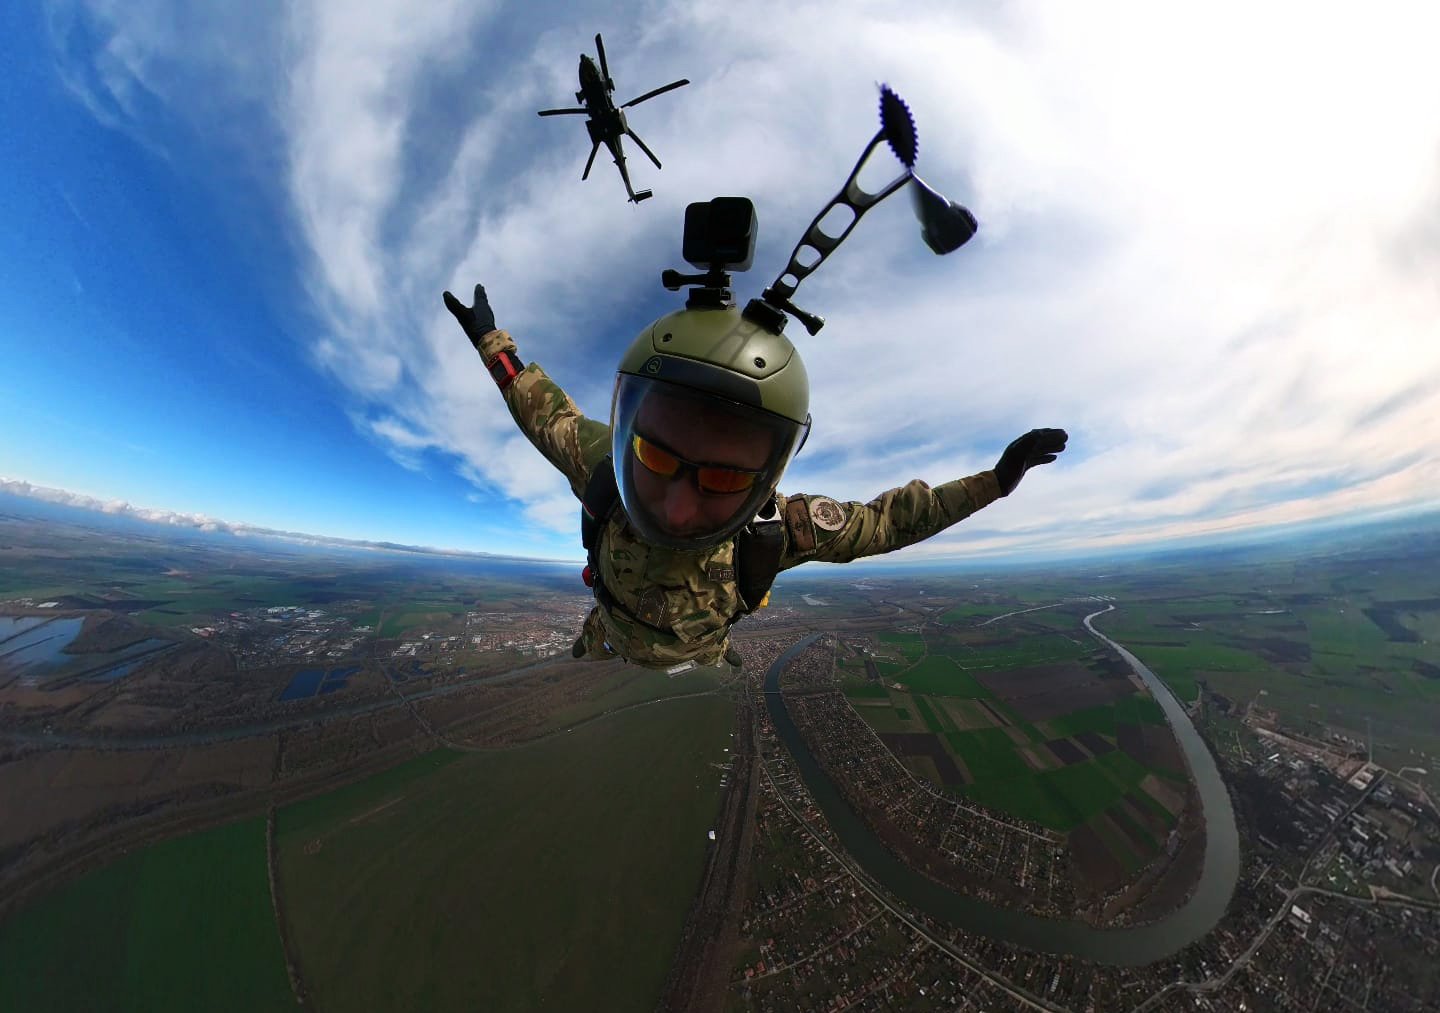 Spektakuläre Fallschirmsprungübung mit dem neuen Militärhubschrauber der Streitkräfte